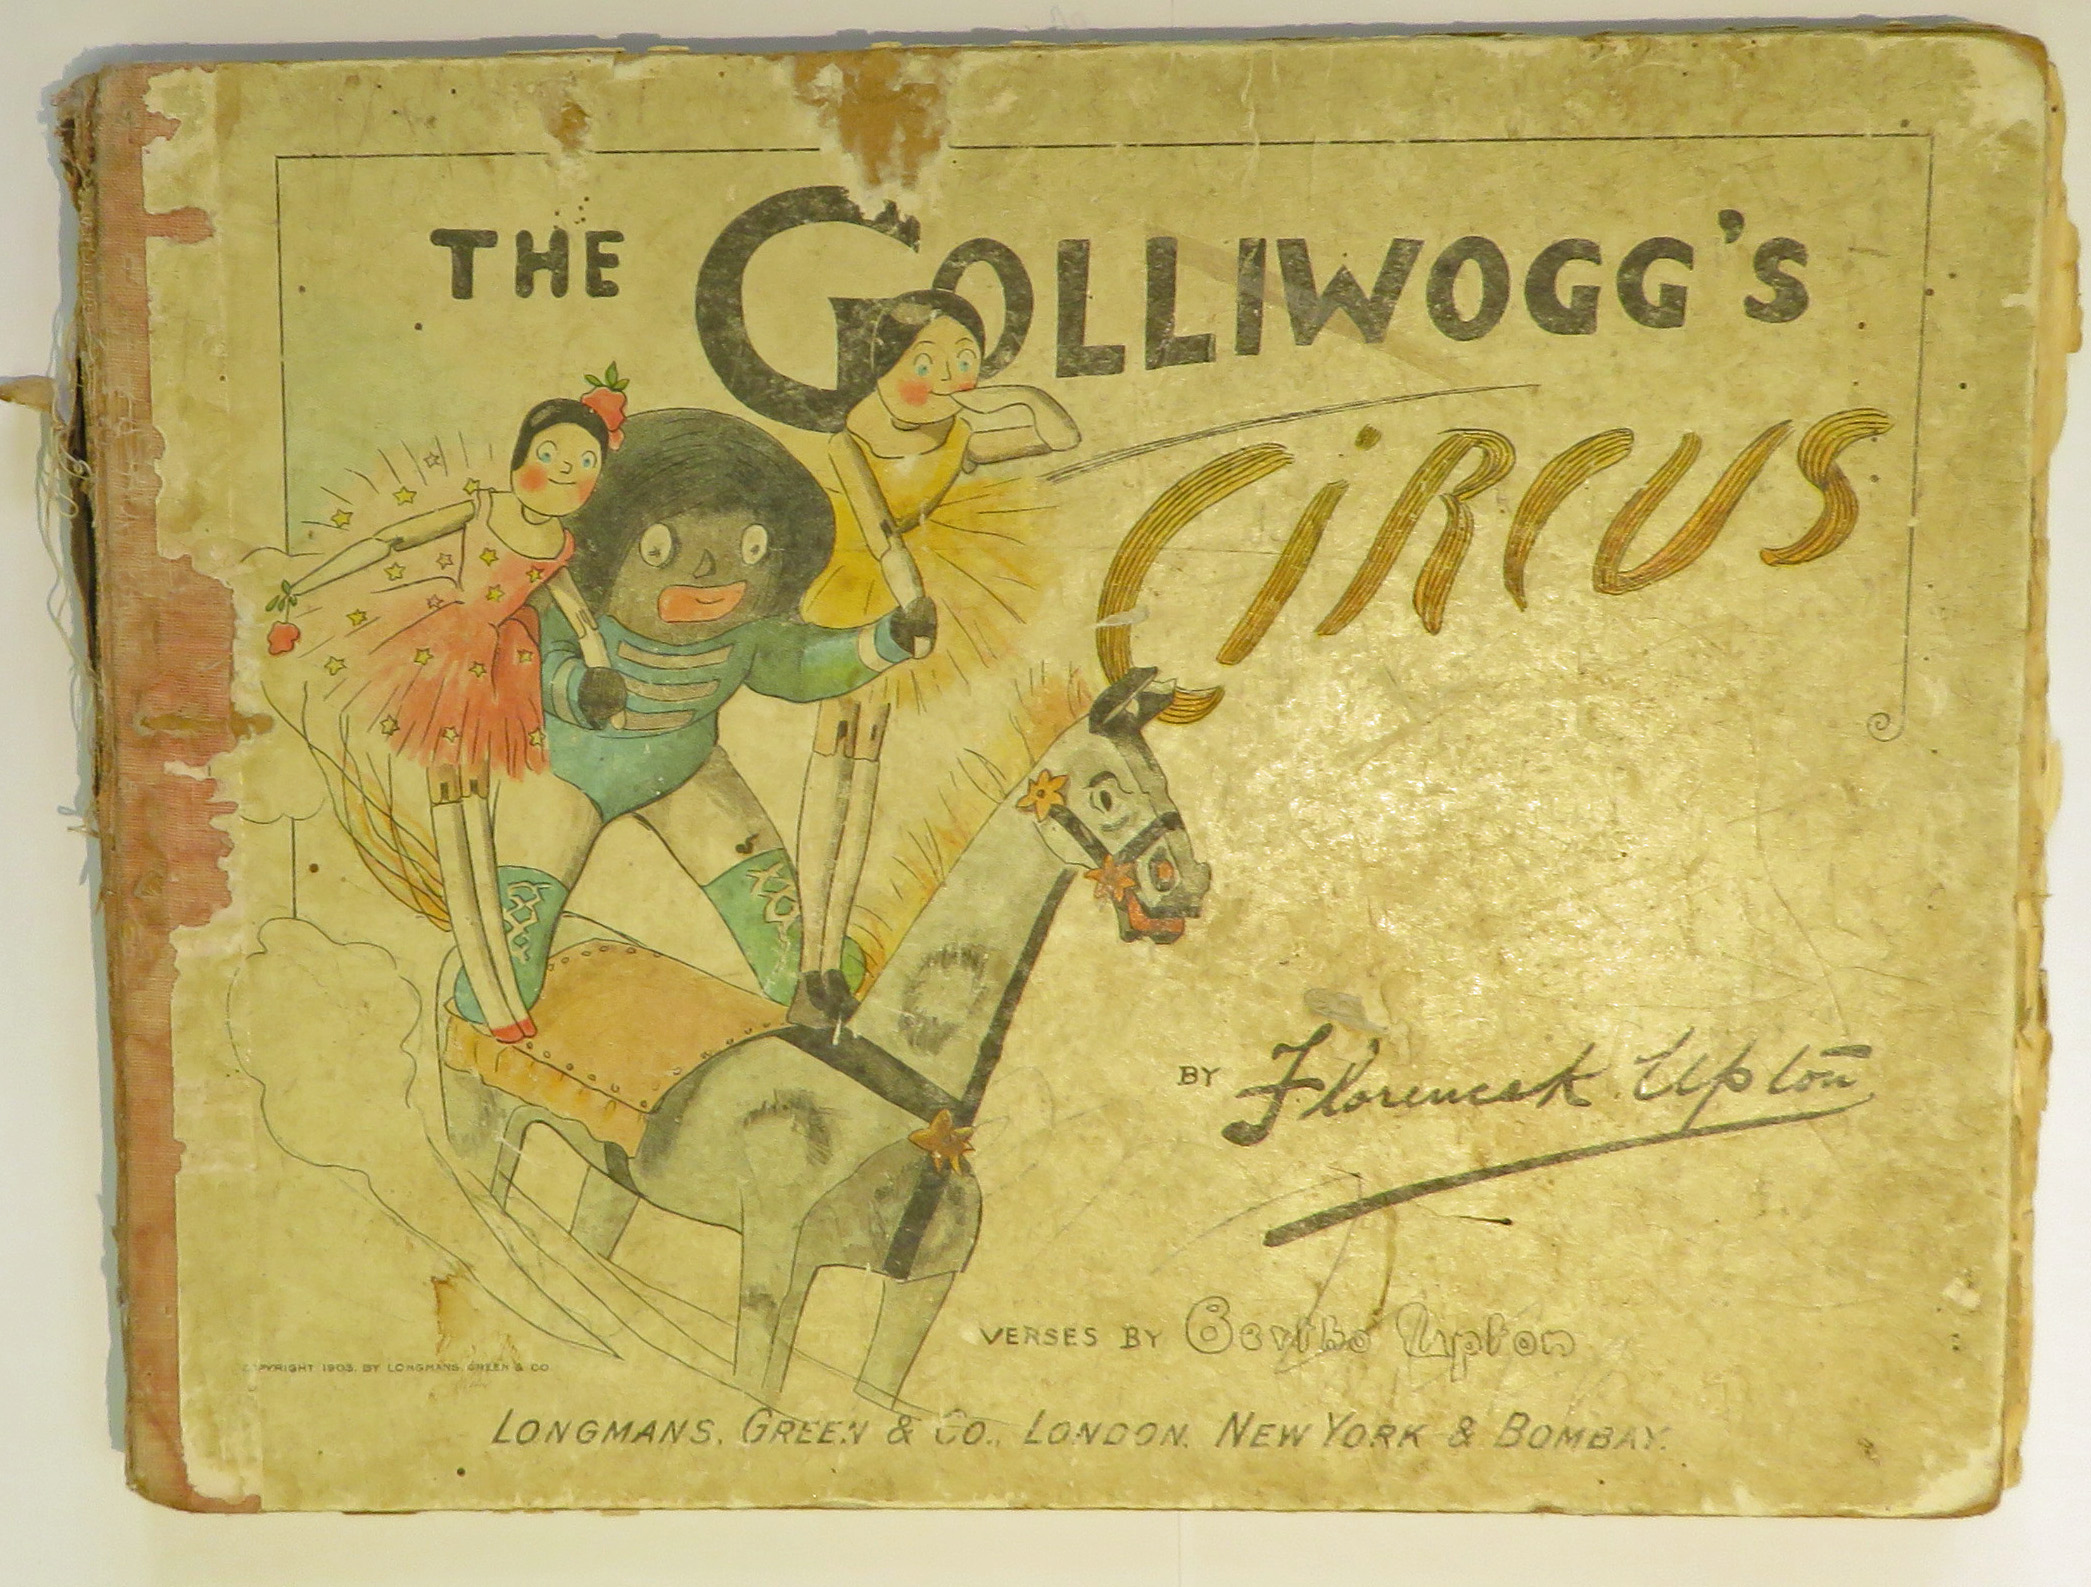 The Golliwogg's Circus